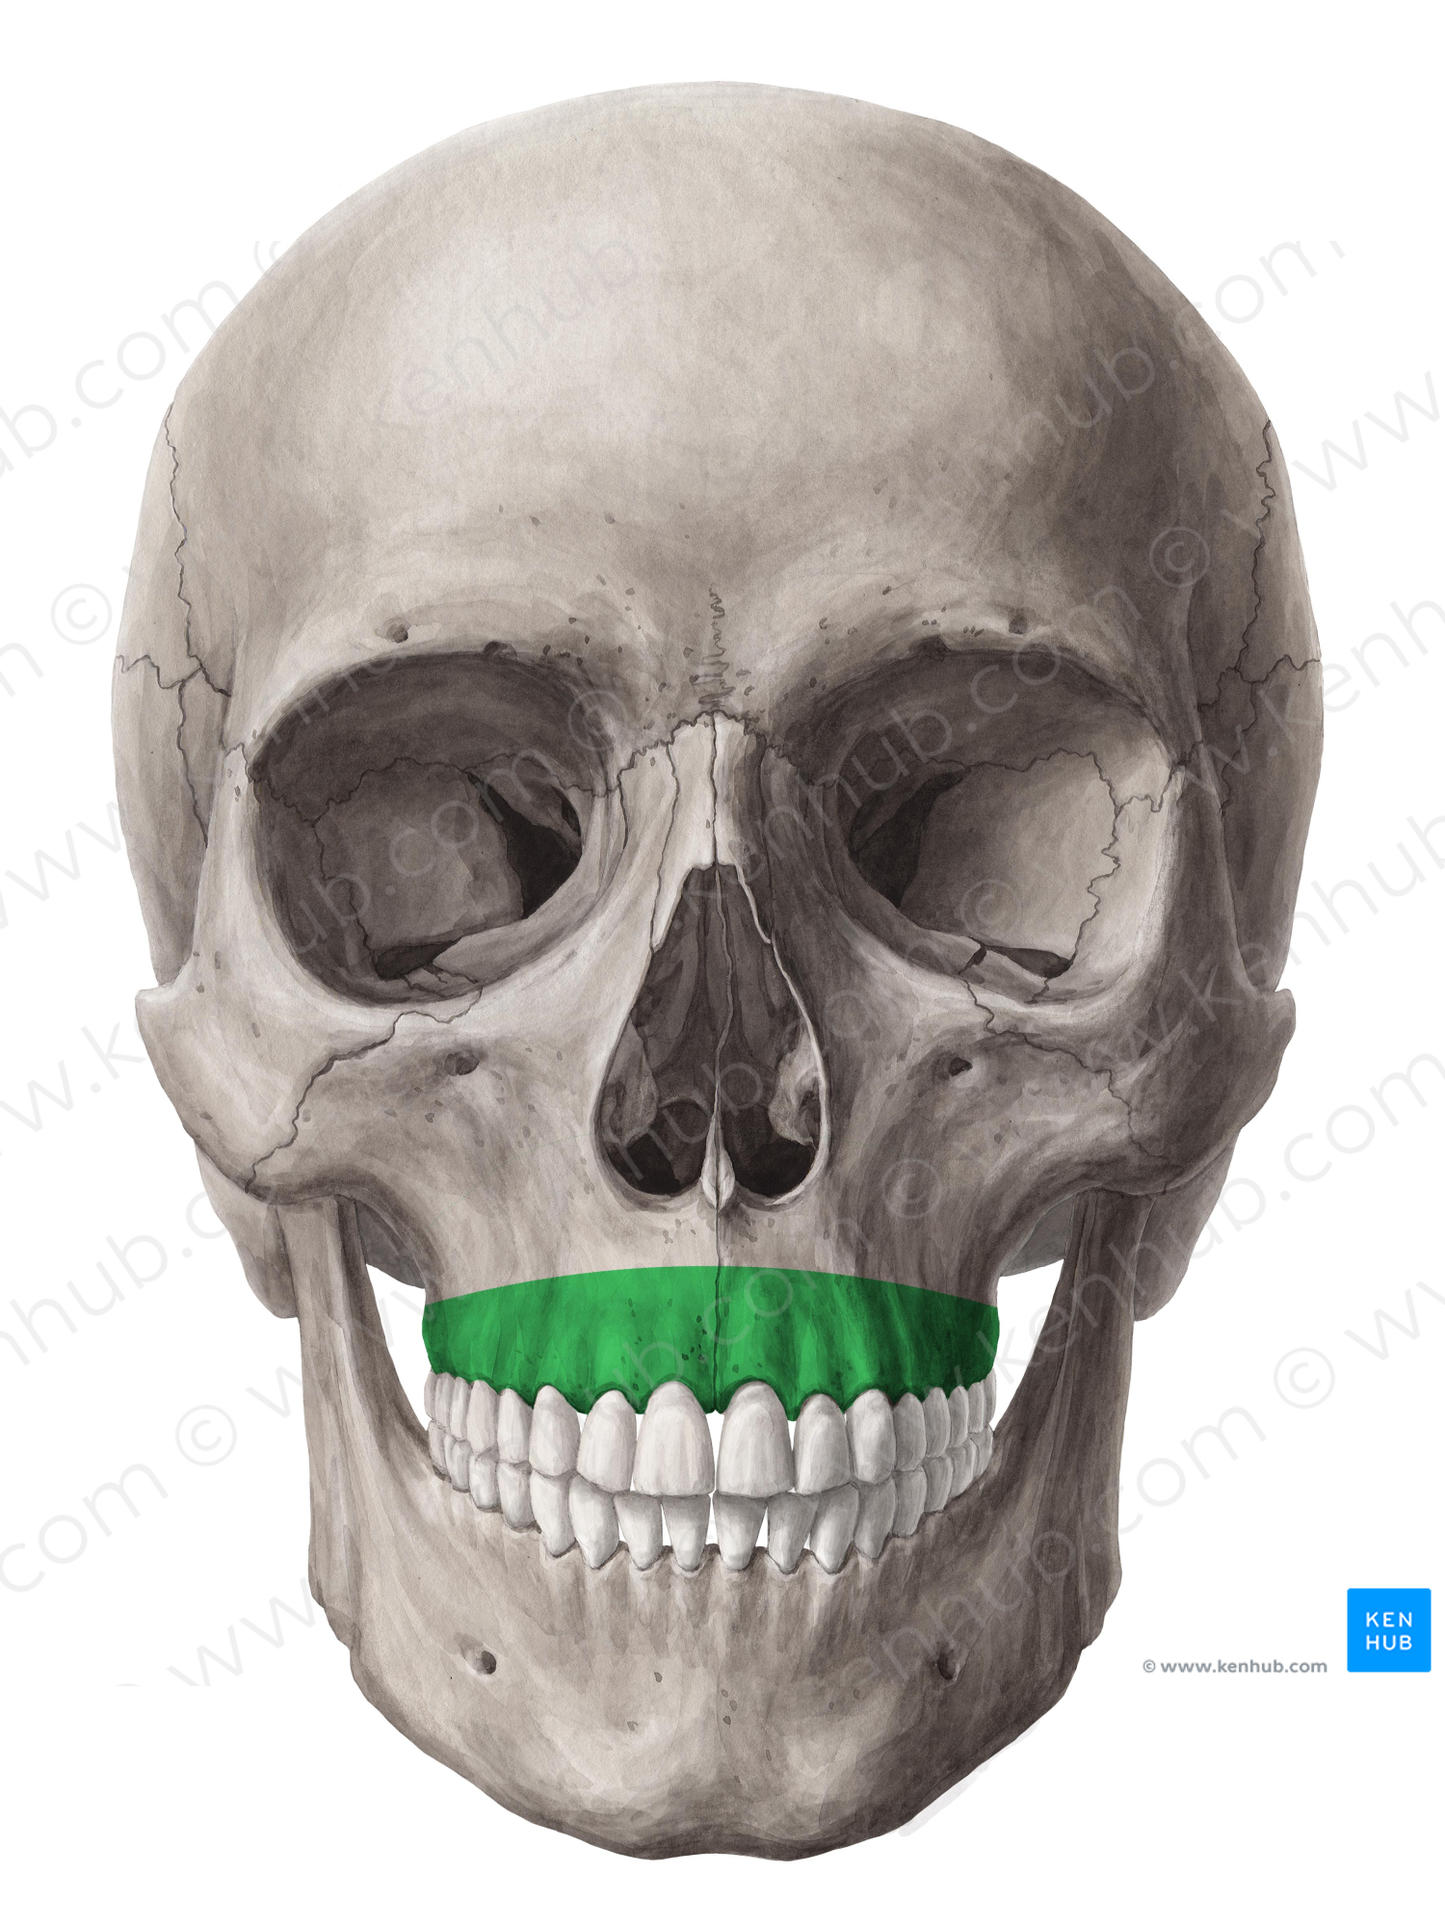 Alveolar process of maxilla (#8159)